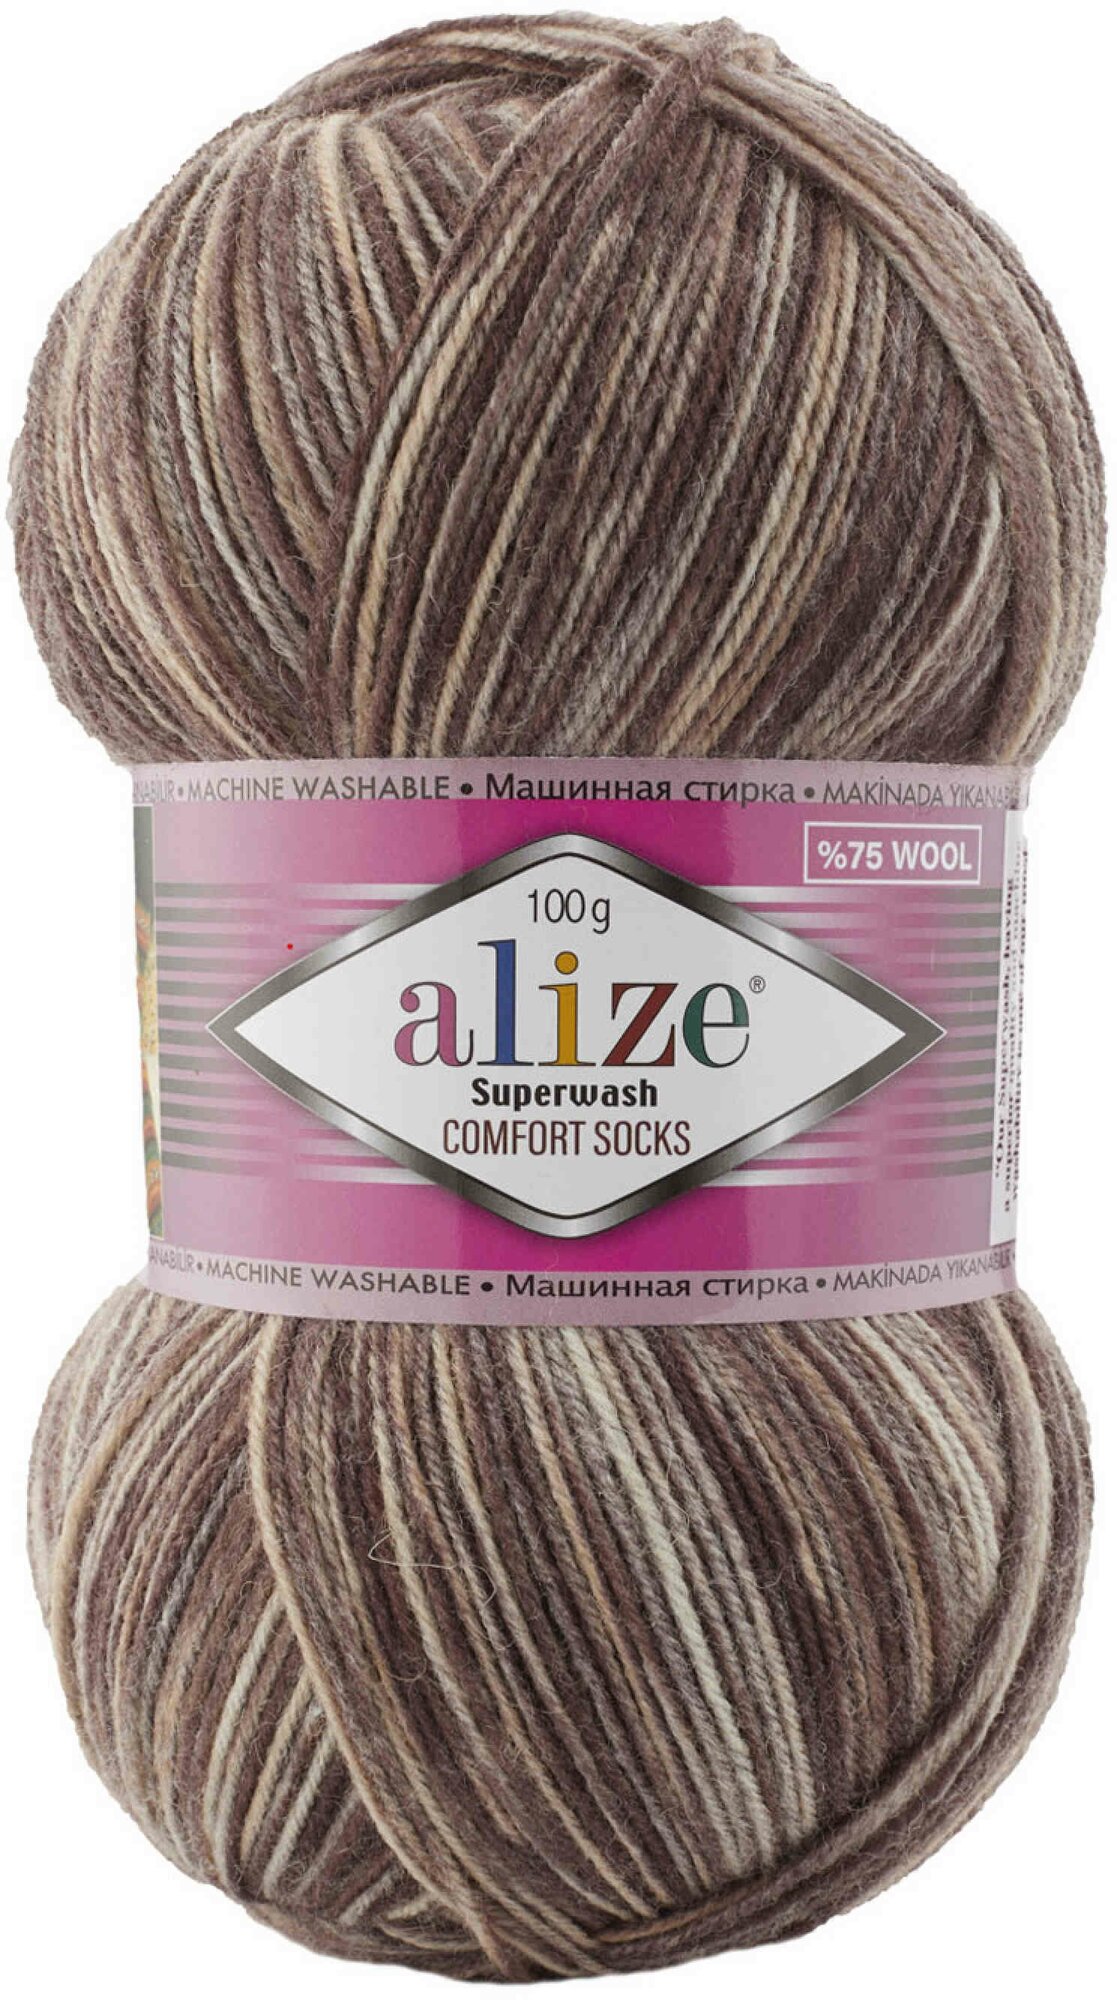 Пряжа Alize Superwash comfort socks коричнево-бежевый (7678), 75%шерсть/25%полиамид, 420м, 100г, 1шт